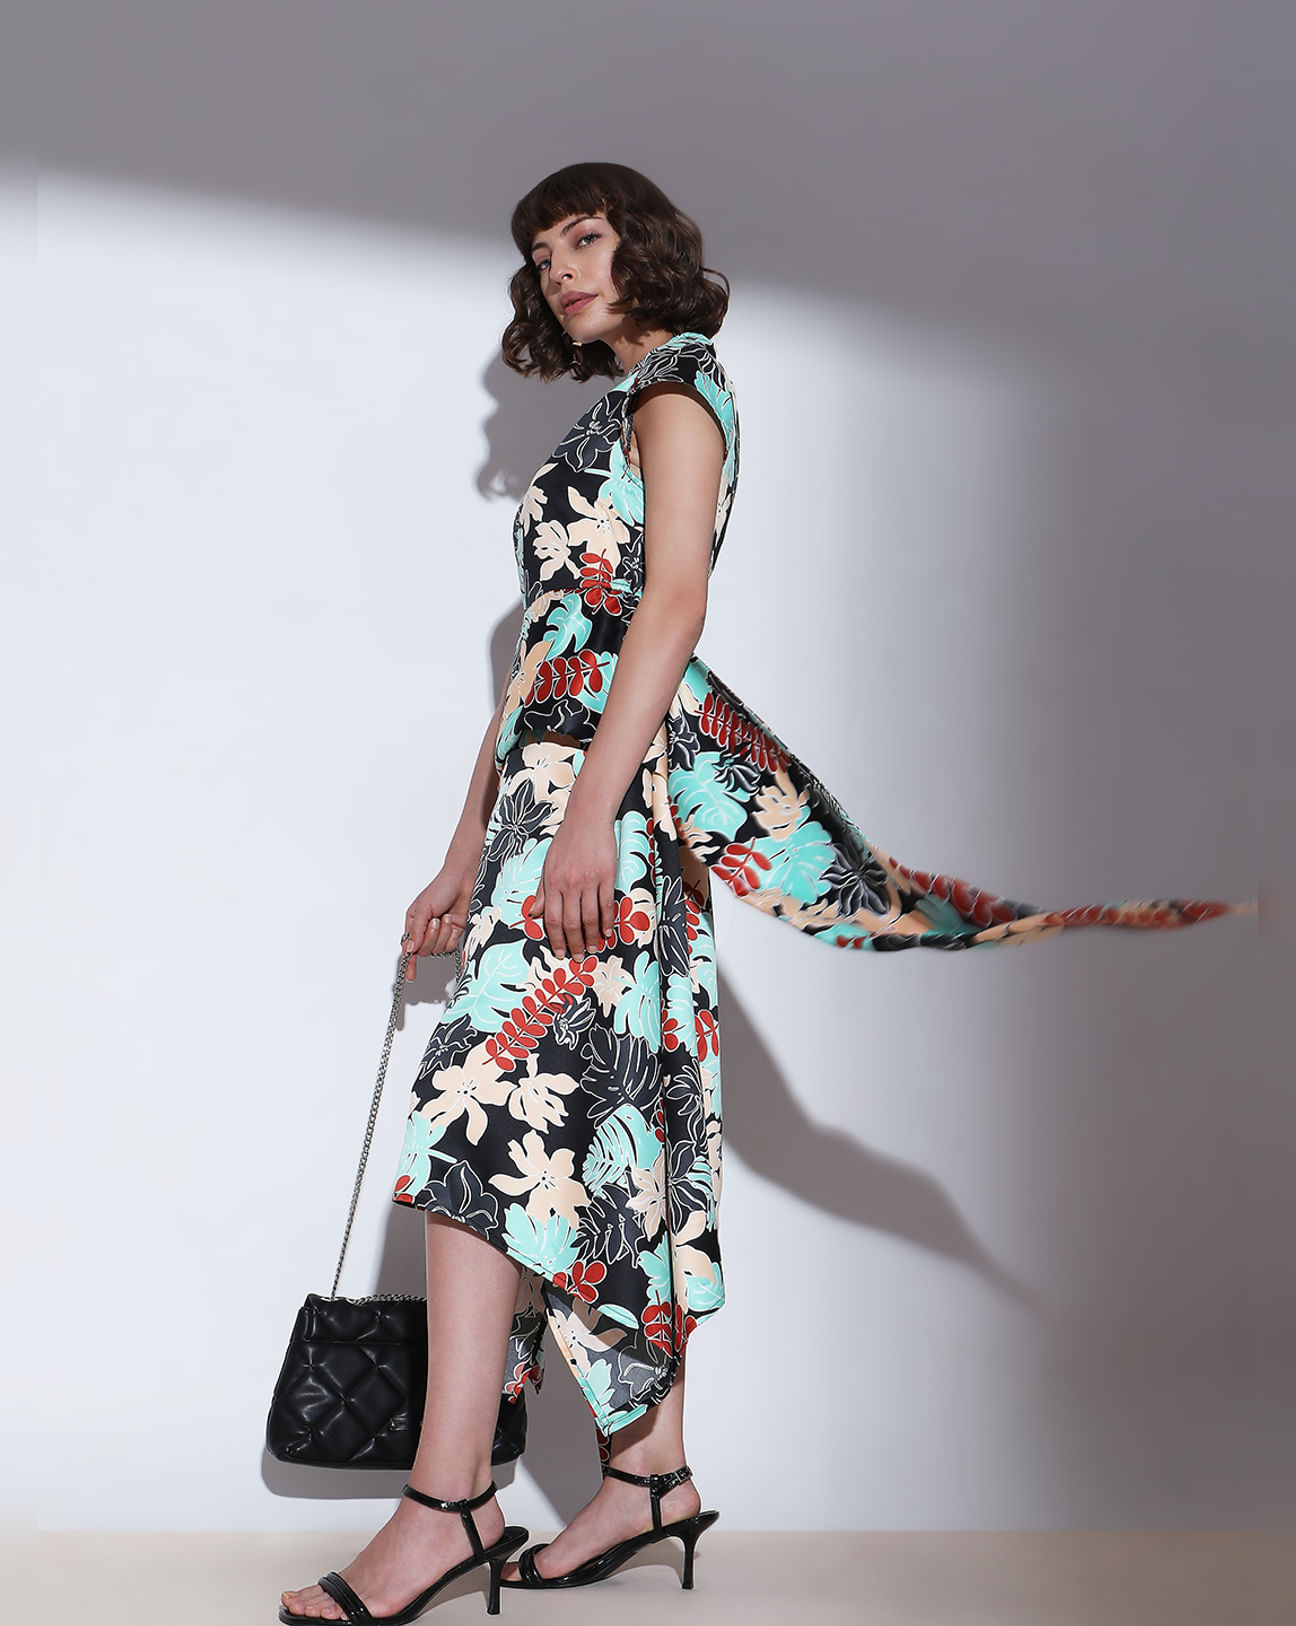 Jet Black Floral Lace Asymmetric Midi Dress